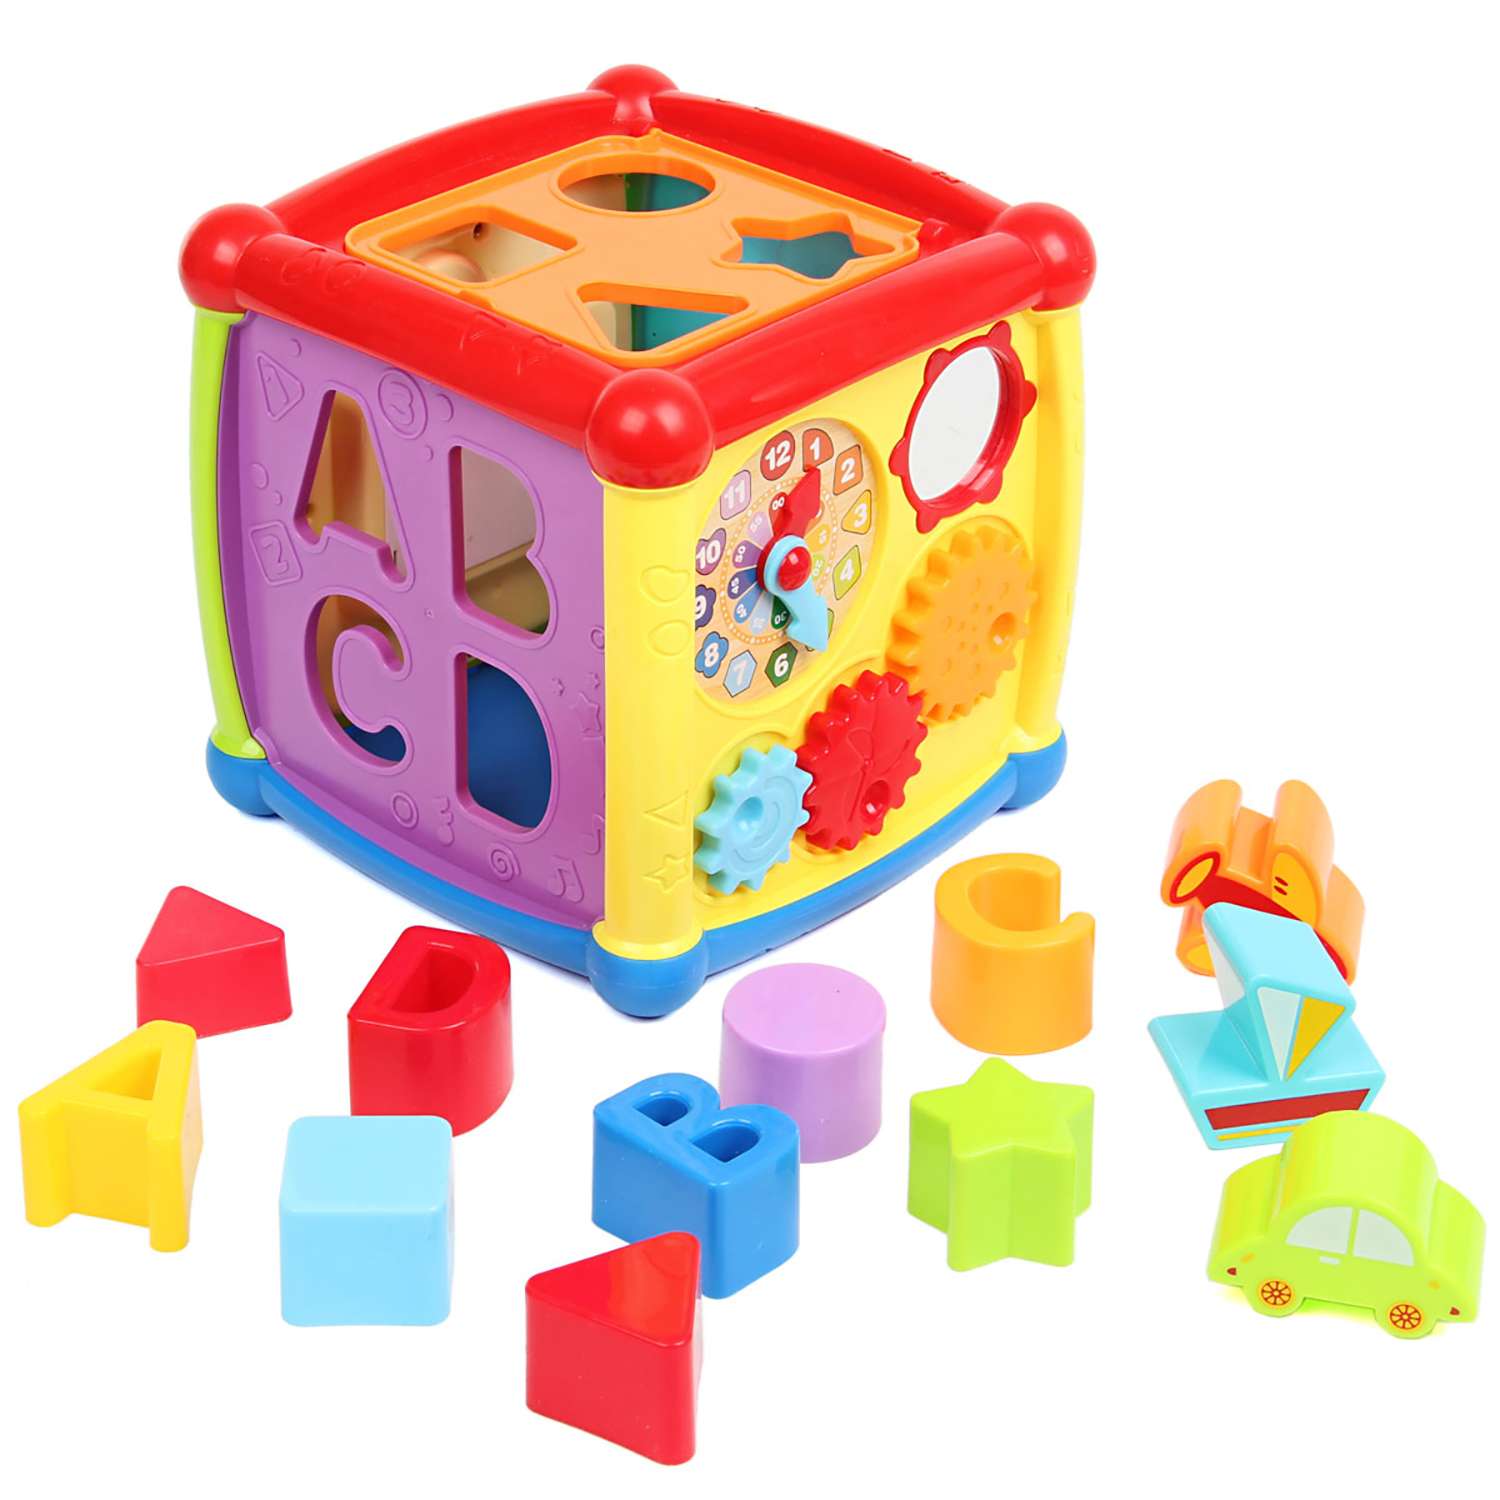 Куб сортер. Детские развивающие кубики-сортеры 72403. Игрушка-сортер ABC куб bh2107. Сортер veld co умный домик. Куб сортер Playskool.